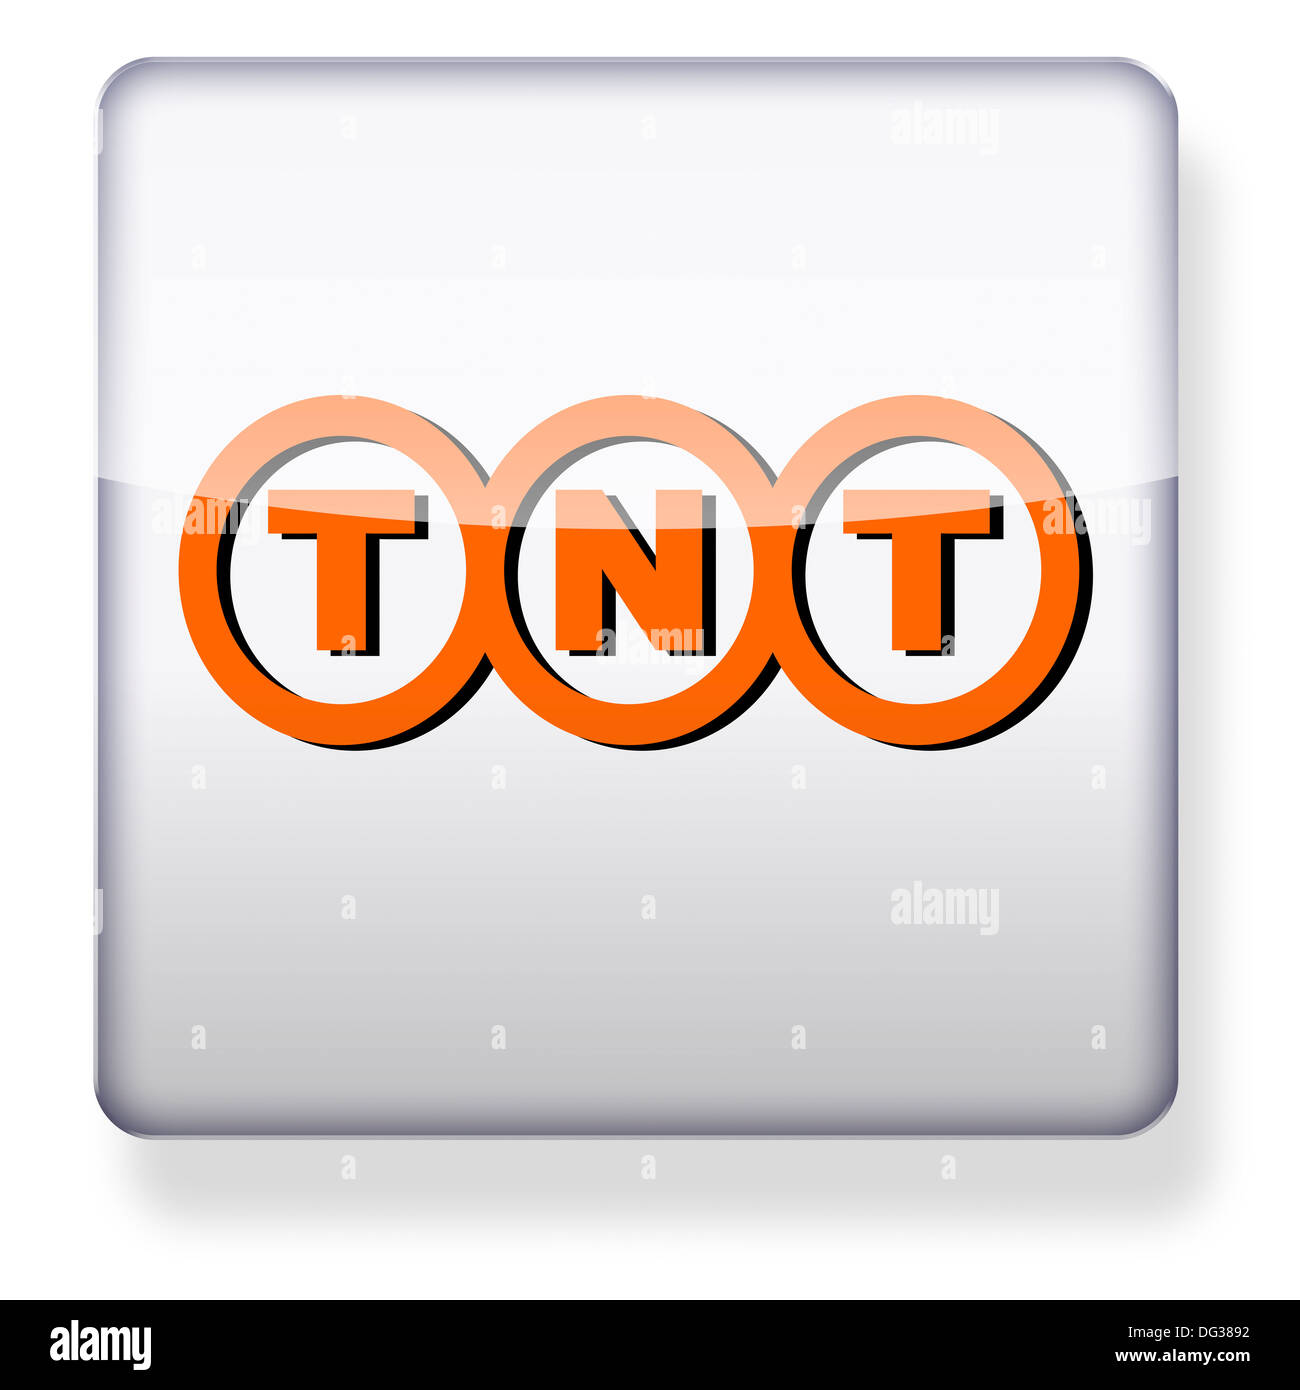 TNT Express logo come l'icona di un'app. Percorso di clipping incluso. Foto Stock